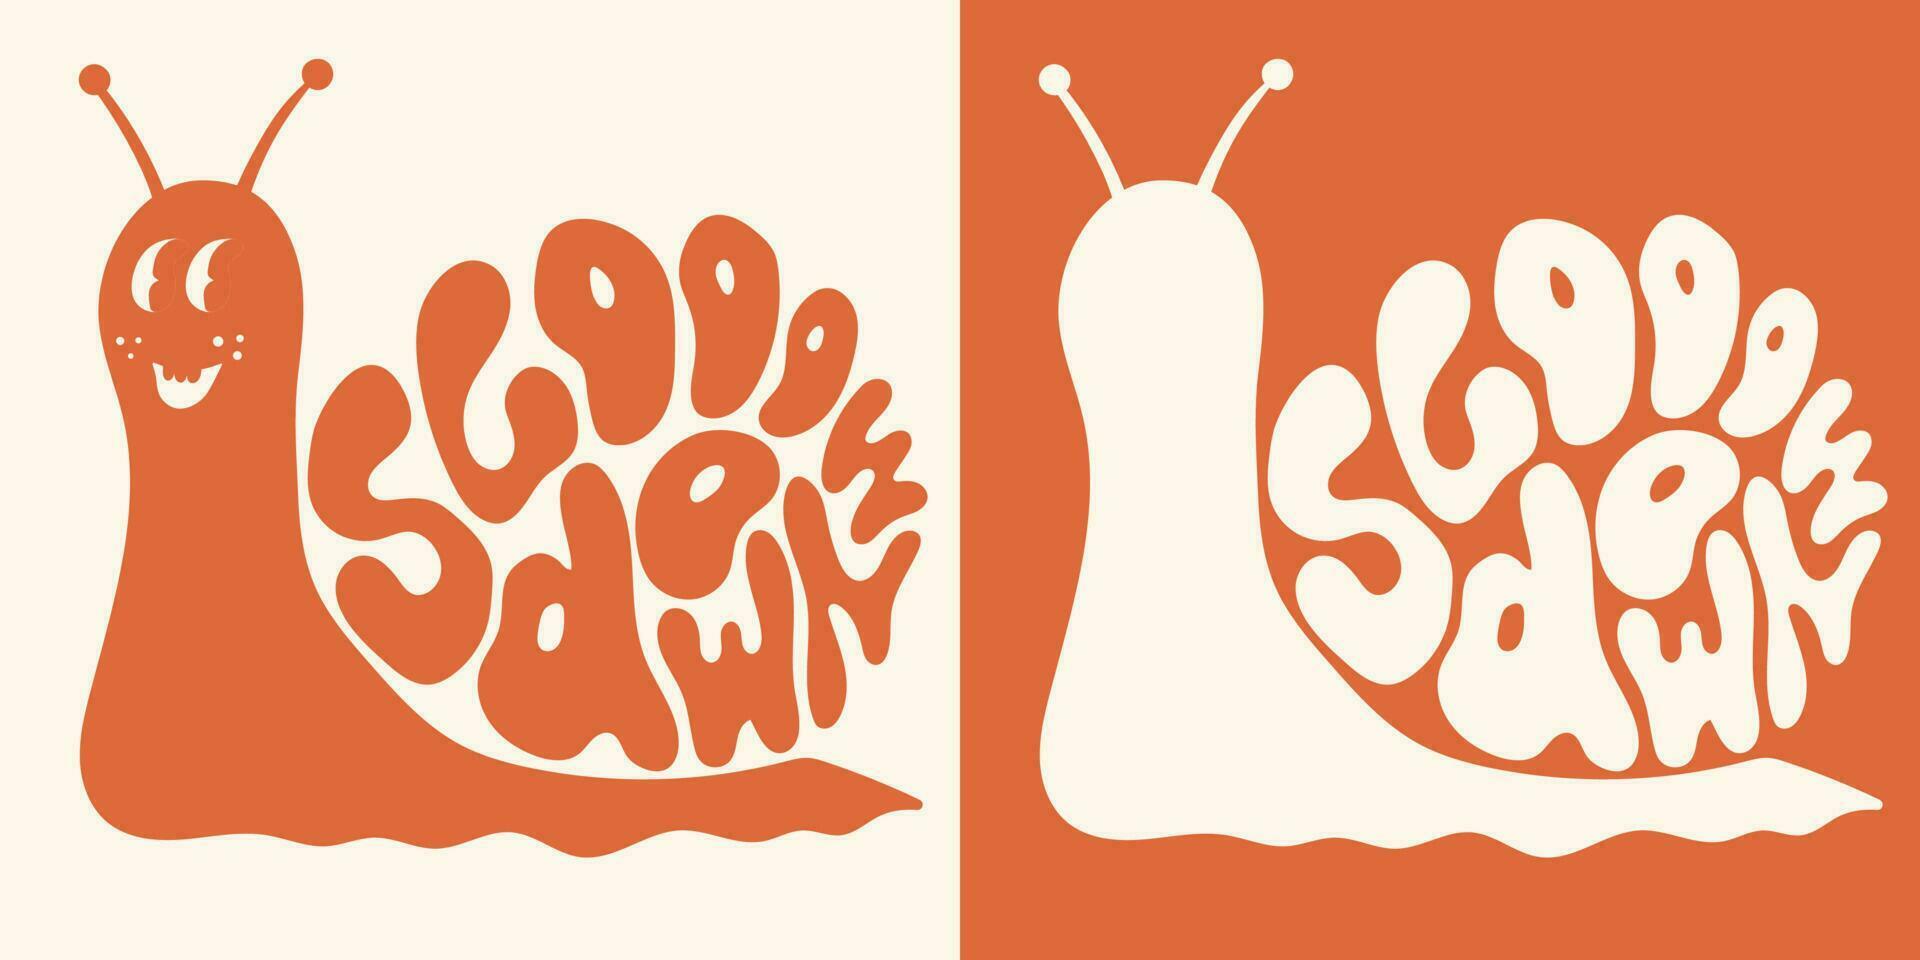 groovy hippie psychedelisch belettering langzaam naar beneden in vorm van slak in retro kleuren in wijnoogst stijl van Jaren 60 jaren 70. modieus tekening inspiratie afdrukken voor poster, kaart, t-shirt vector